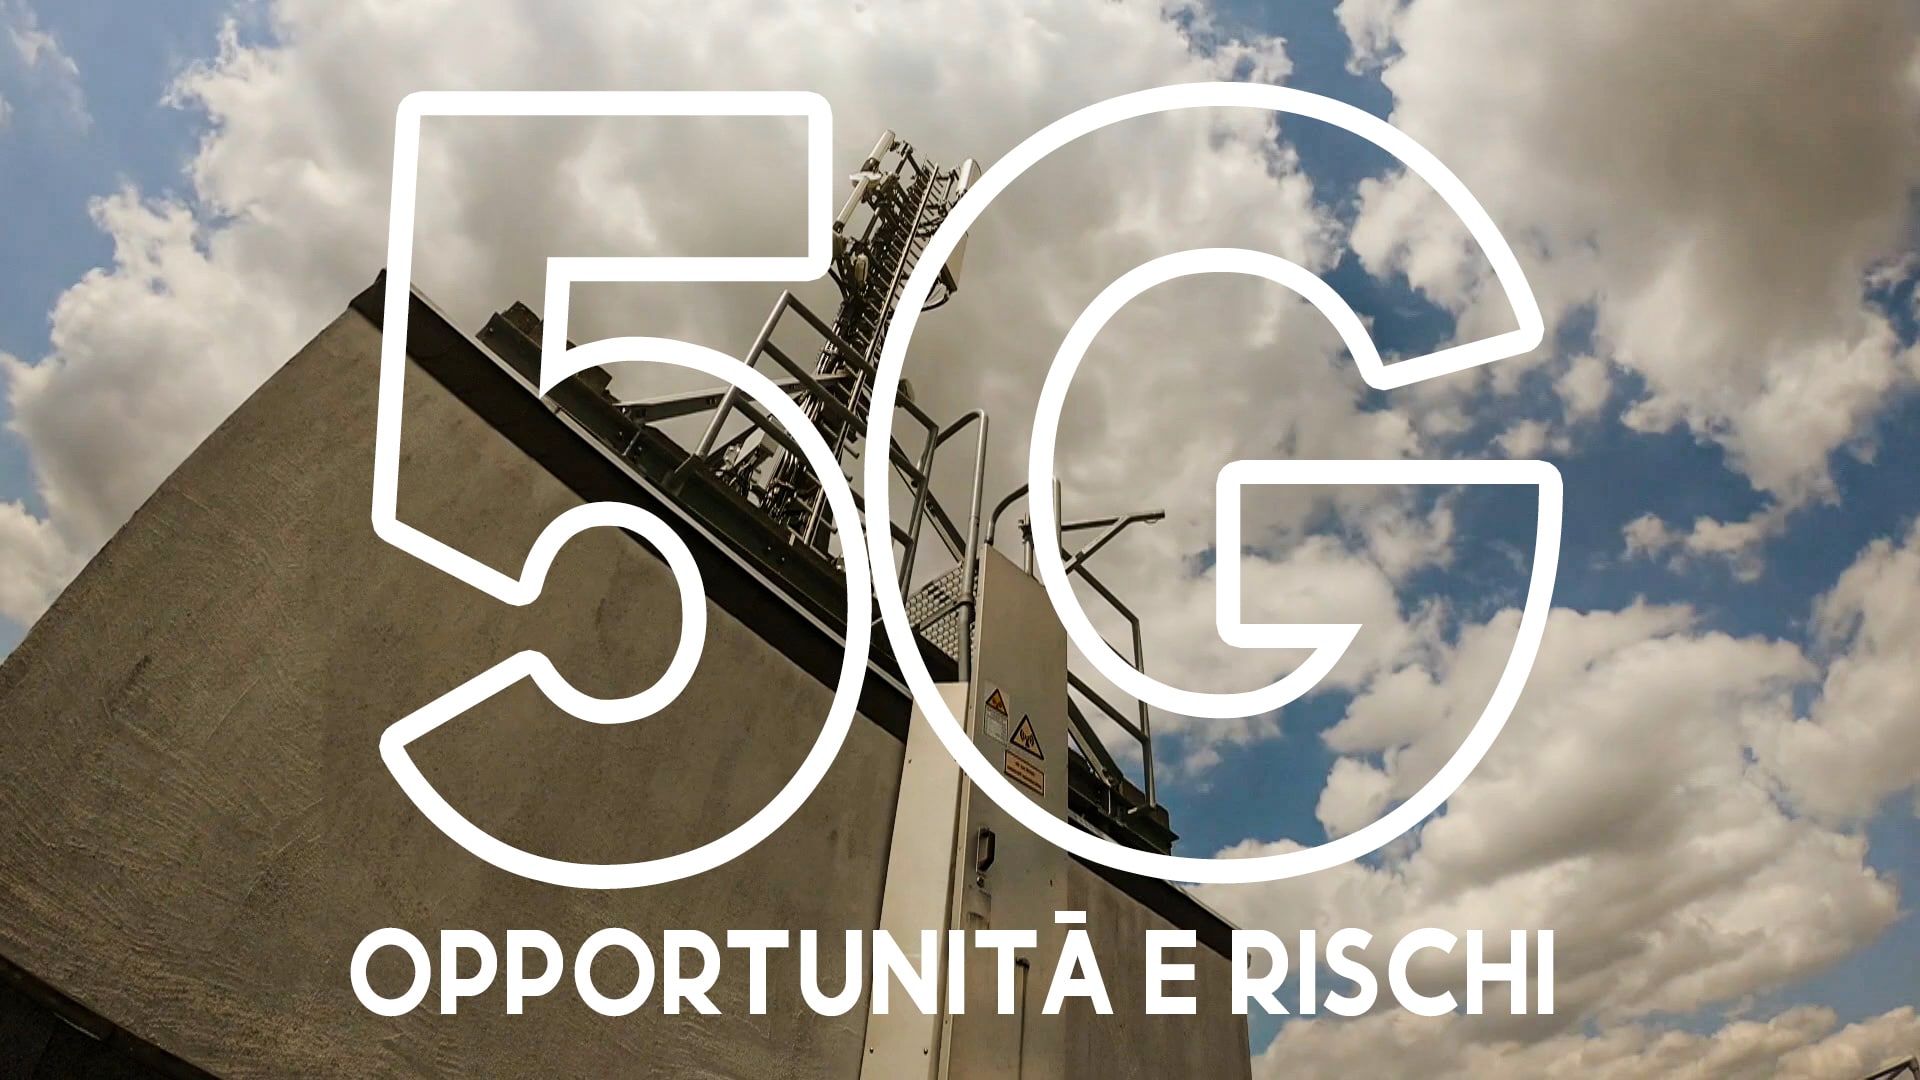 5G - Opportunità e rischi